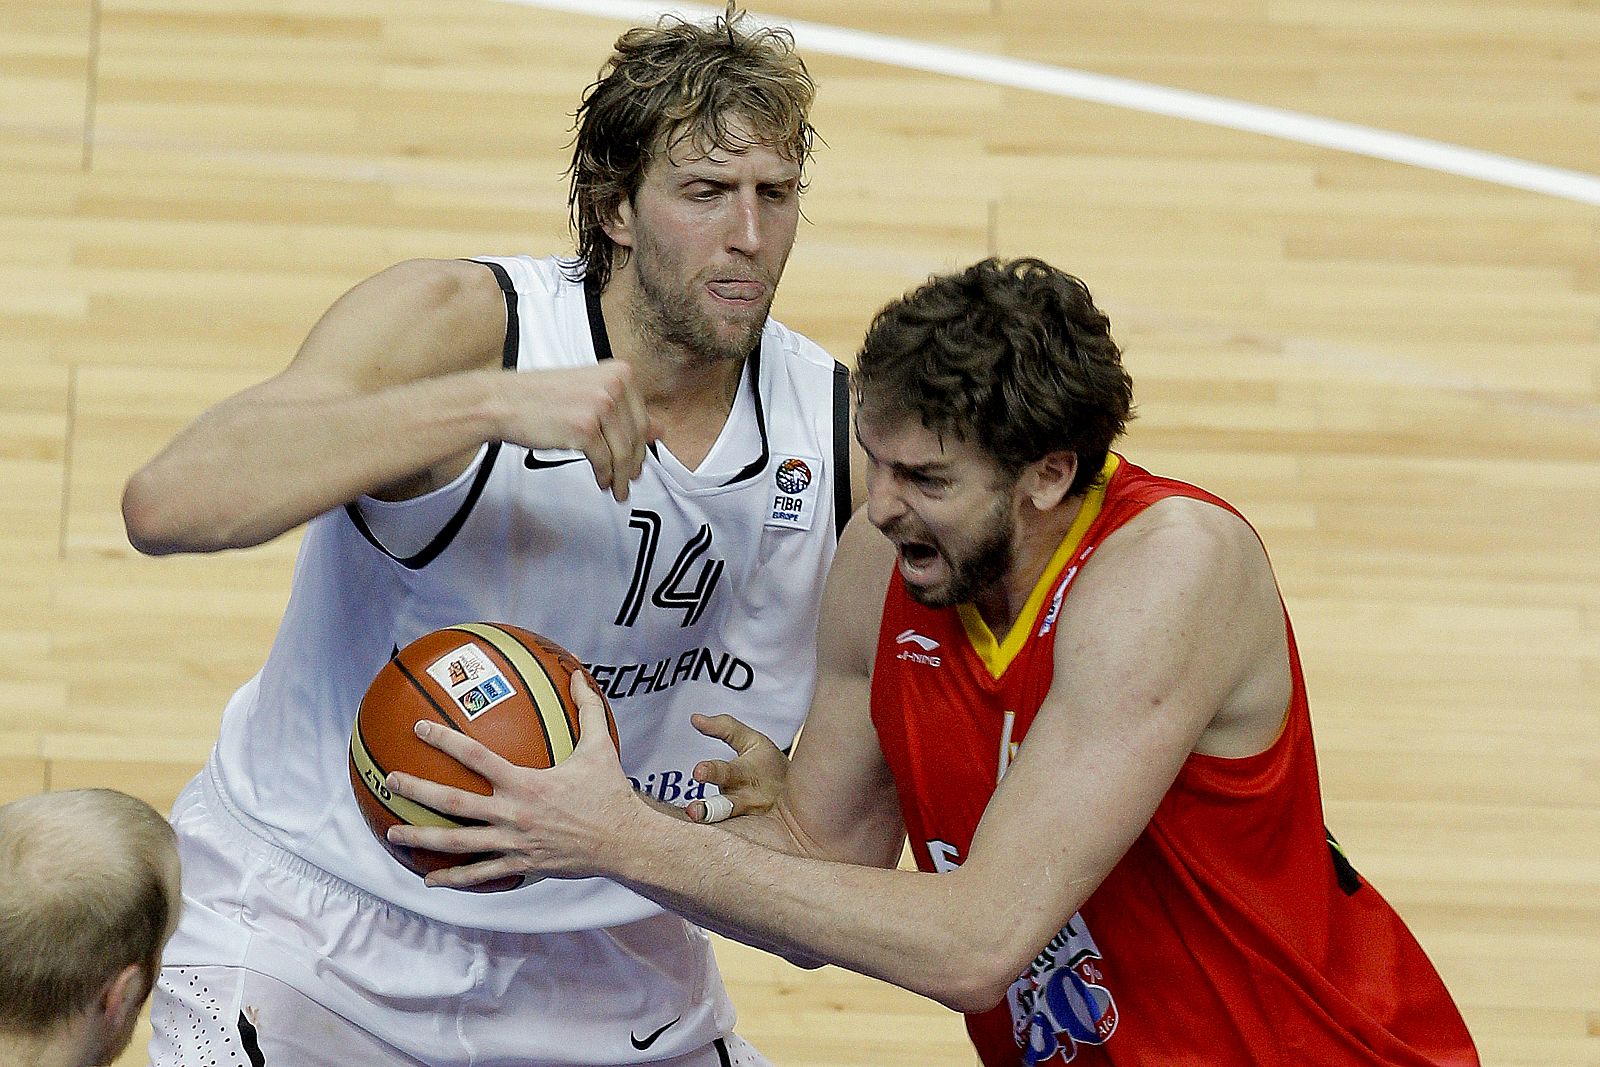 El jugador de la selección española de baloncesto Pau Gasol intenta escaparse de la defensa del jugador de la selección alemana Dirk Nowitzki